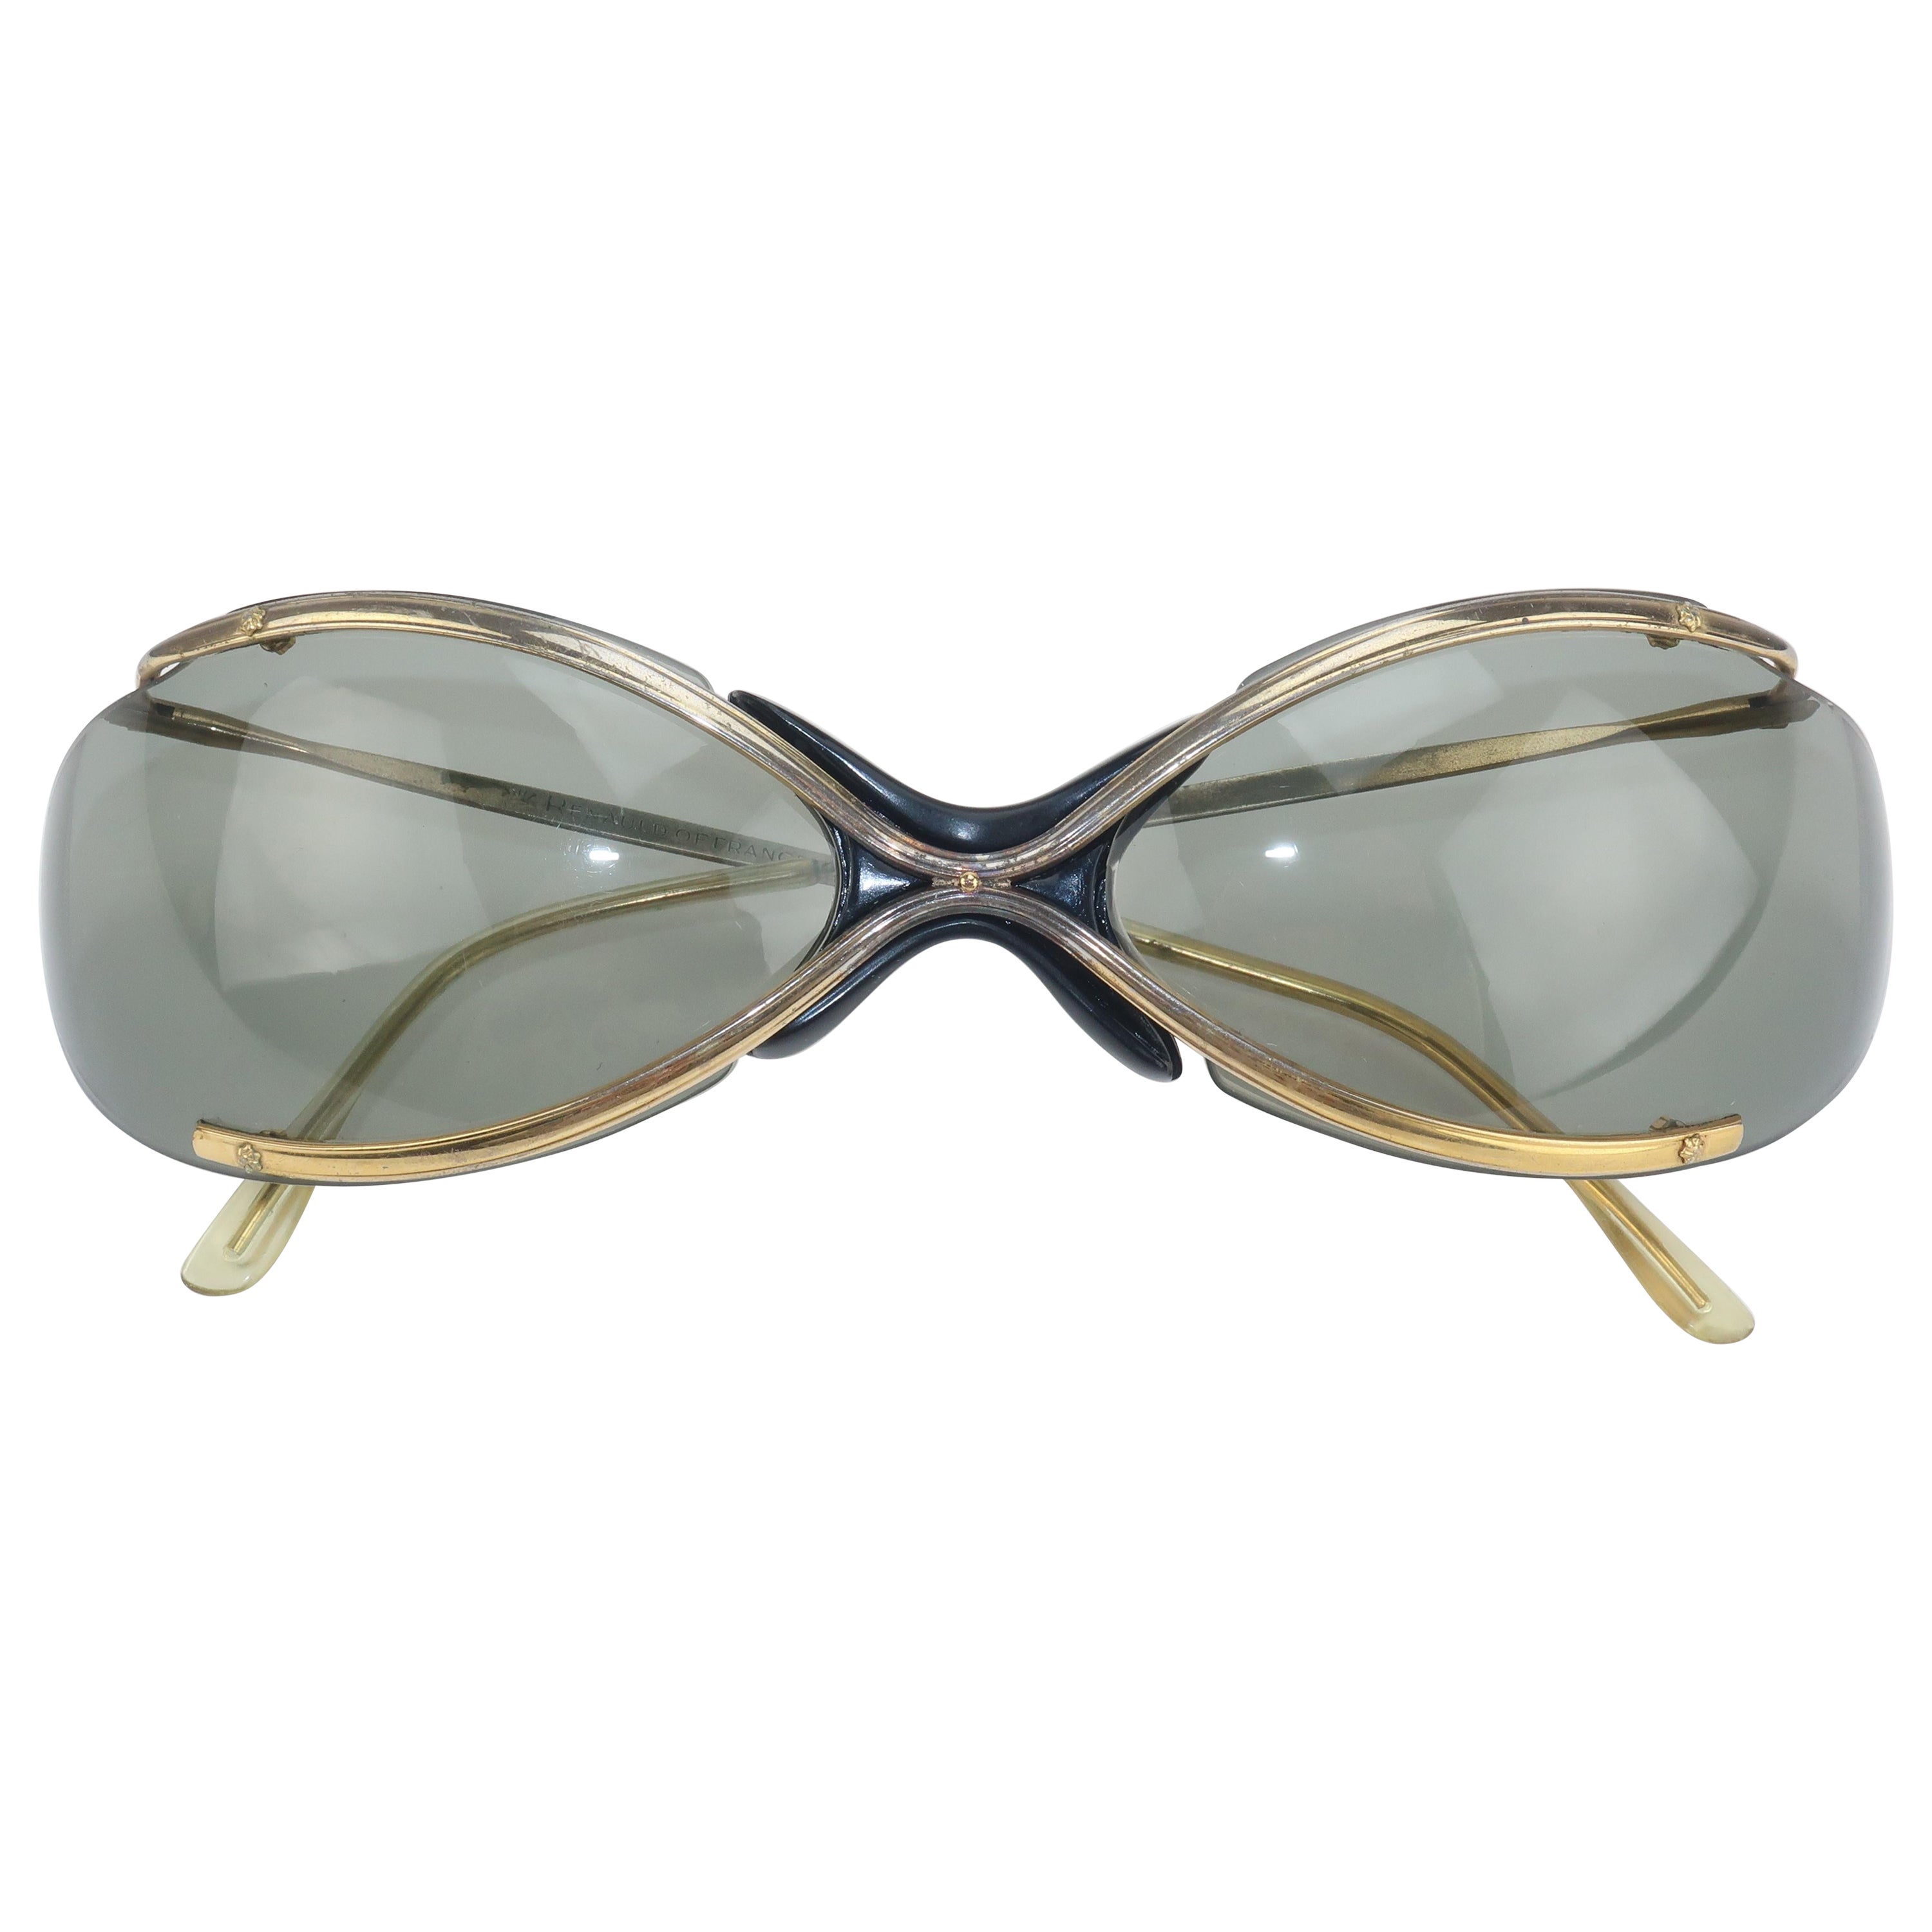 Renauld Bikini French Sunglasses, 1960's